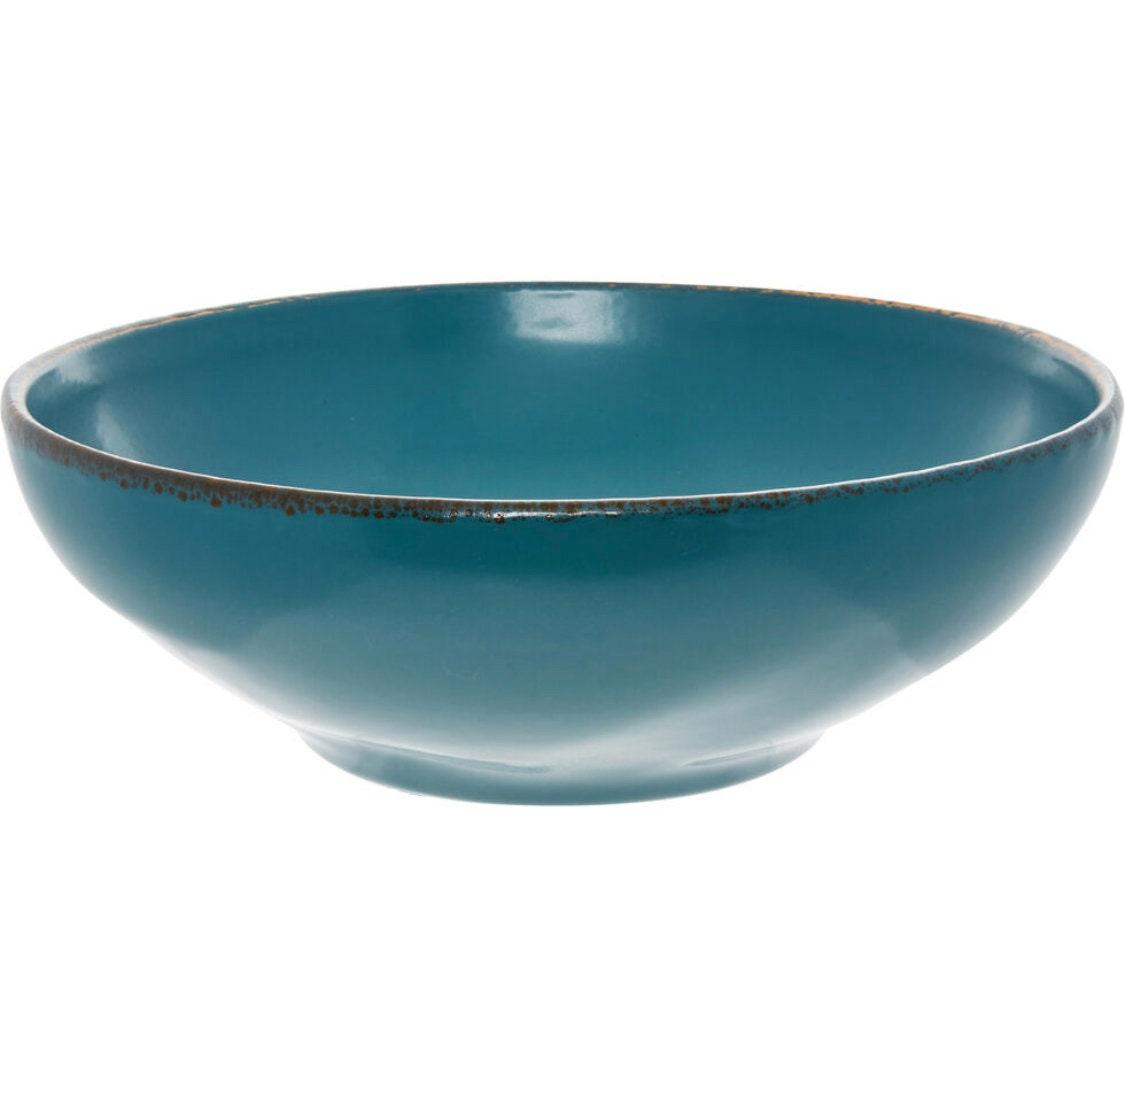 Ceramic Serving Bowl - Teal